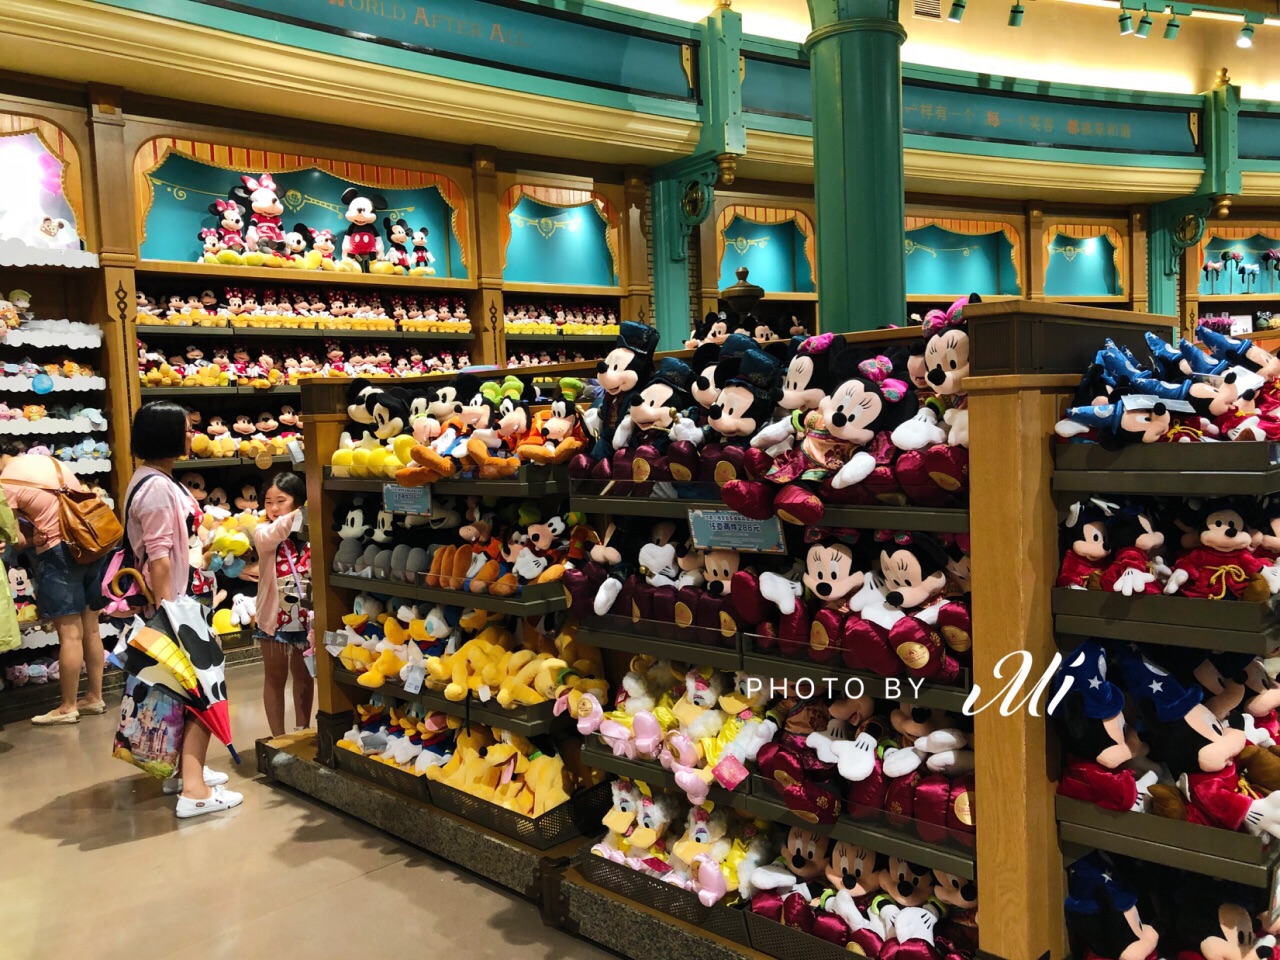 迪士尼世界商店相信是所有女孩热爱的地方吧,各种可爱的迪士尼商品,应